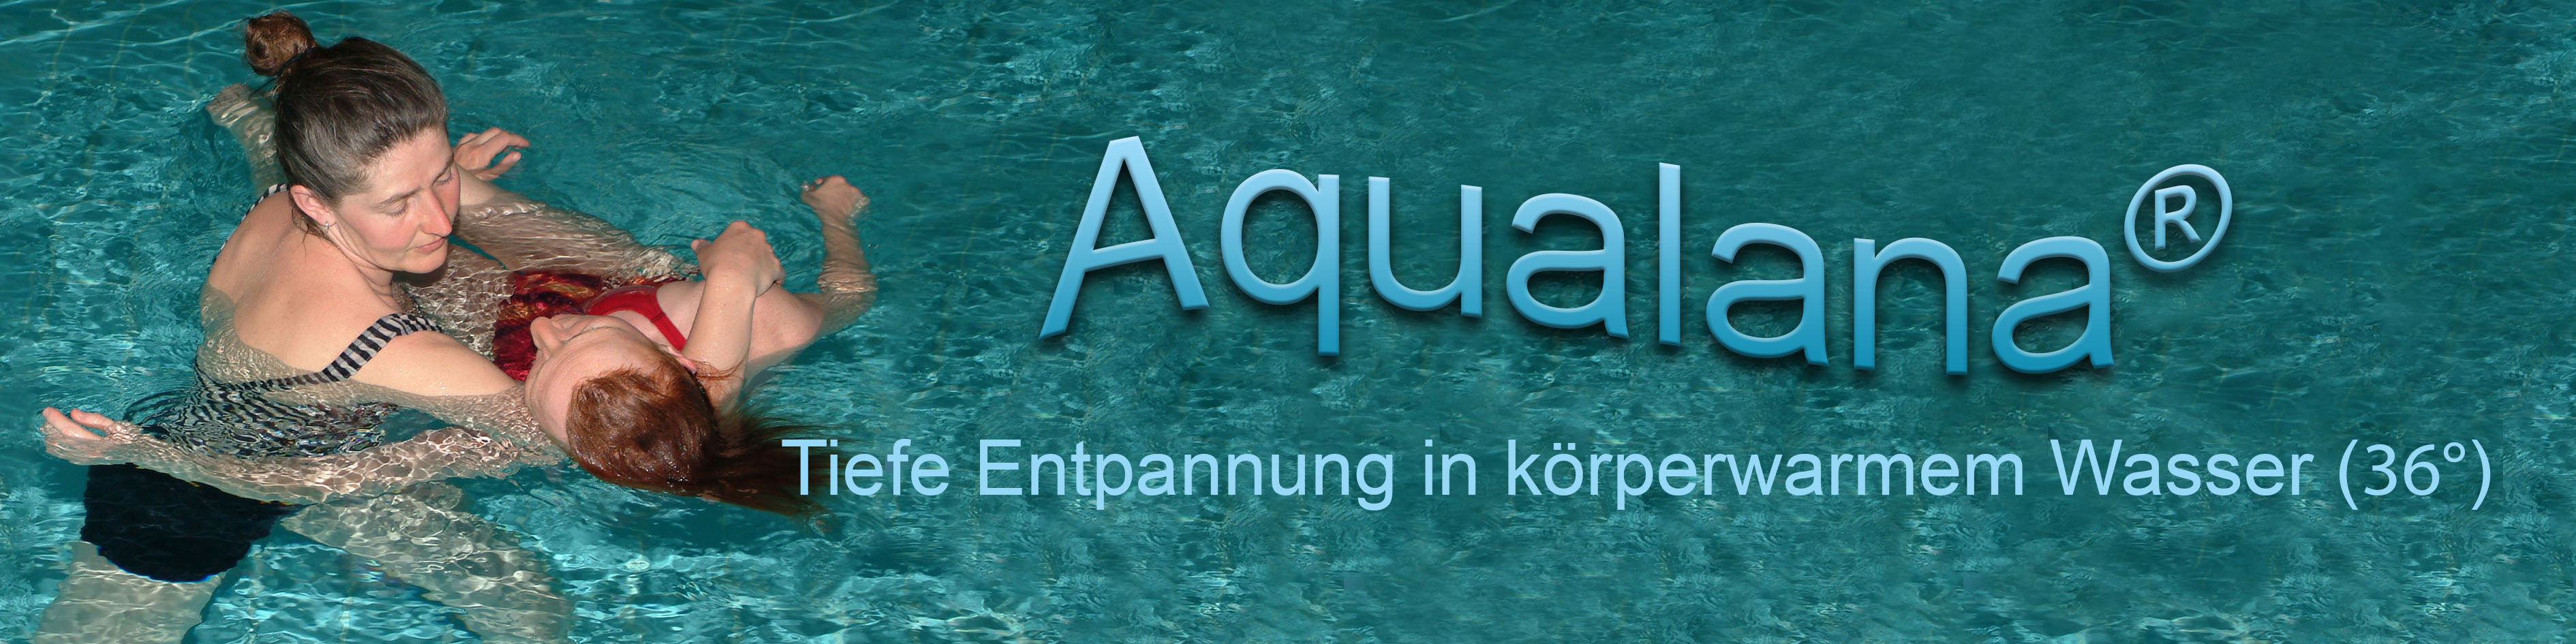 Aqualana